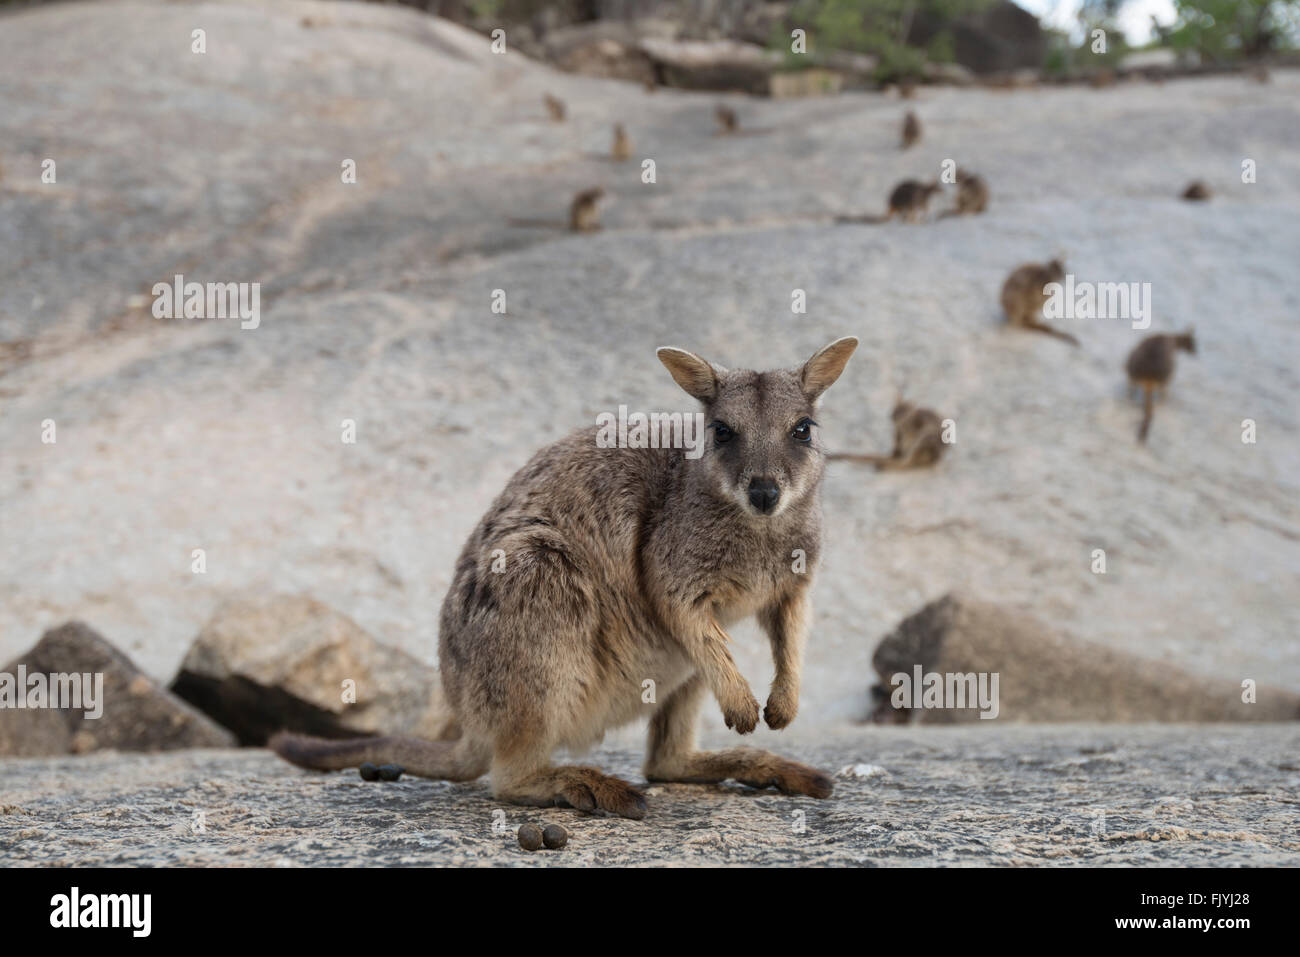 Mareeba rock-wallaby (Petrogale mareeba) Stock Photo